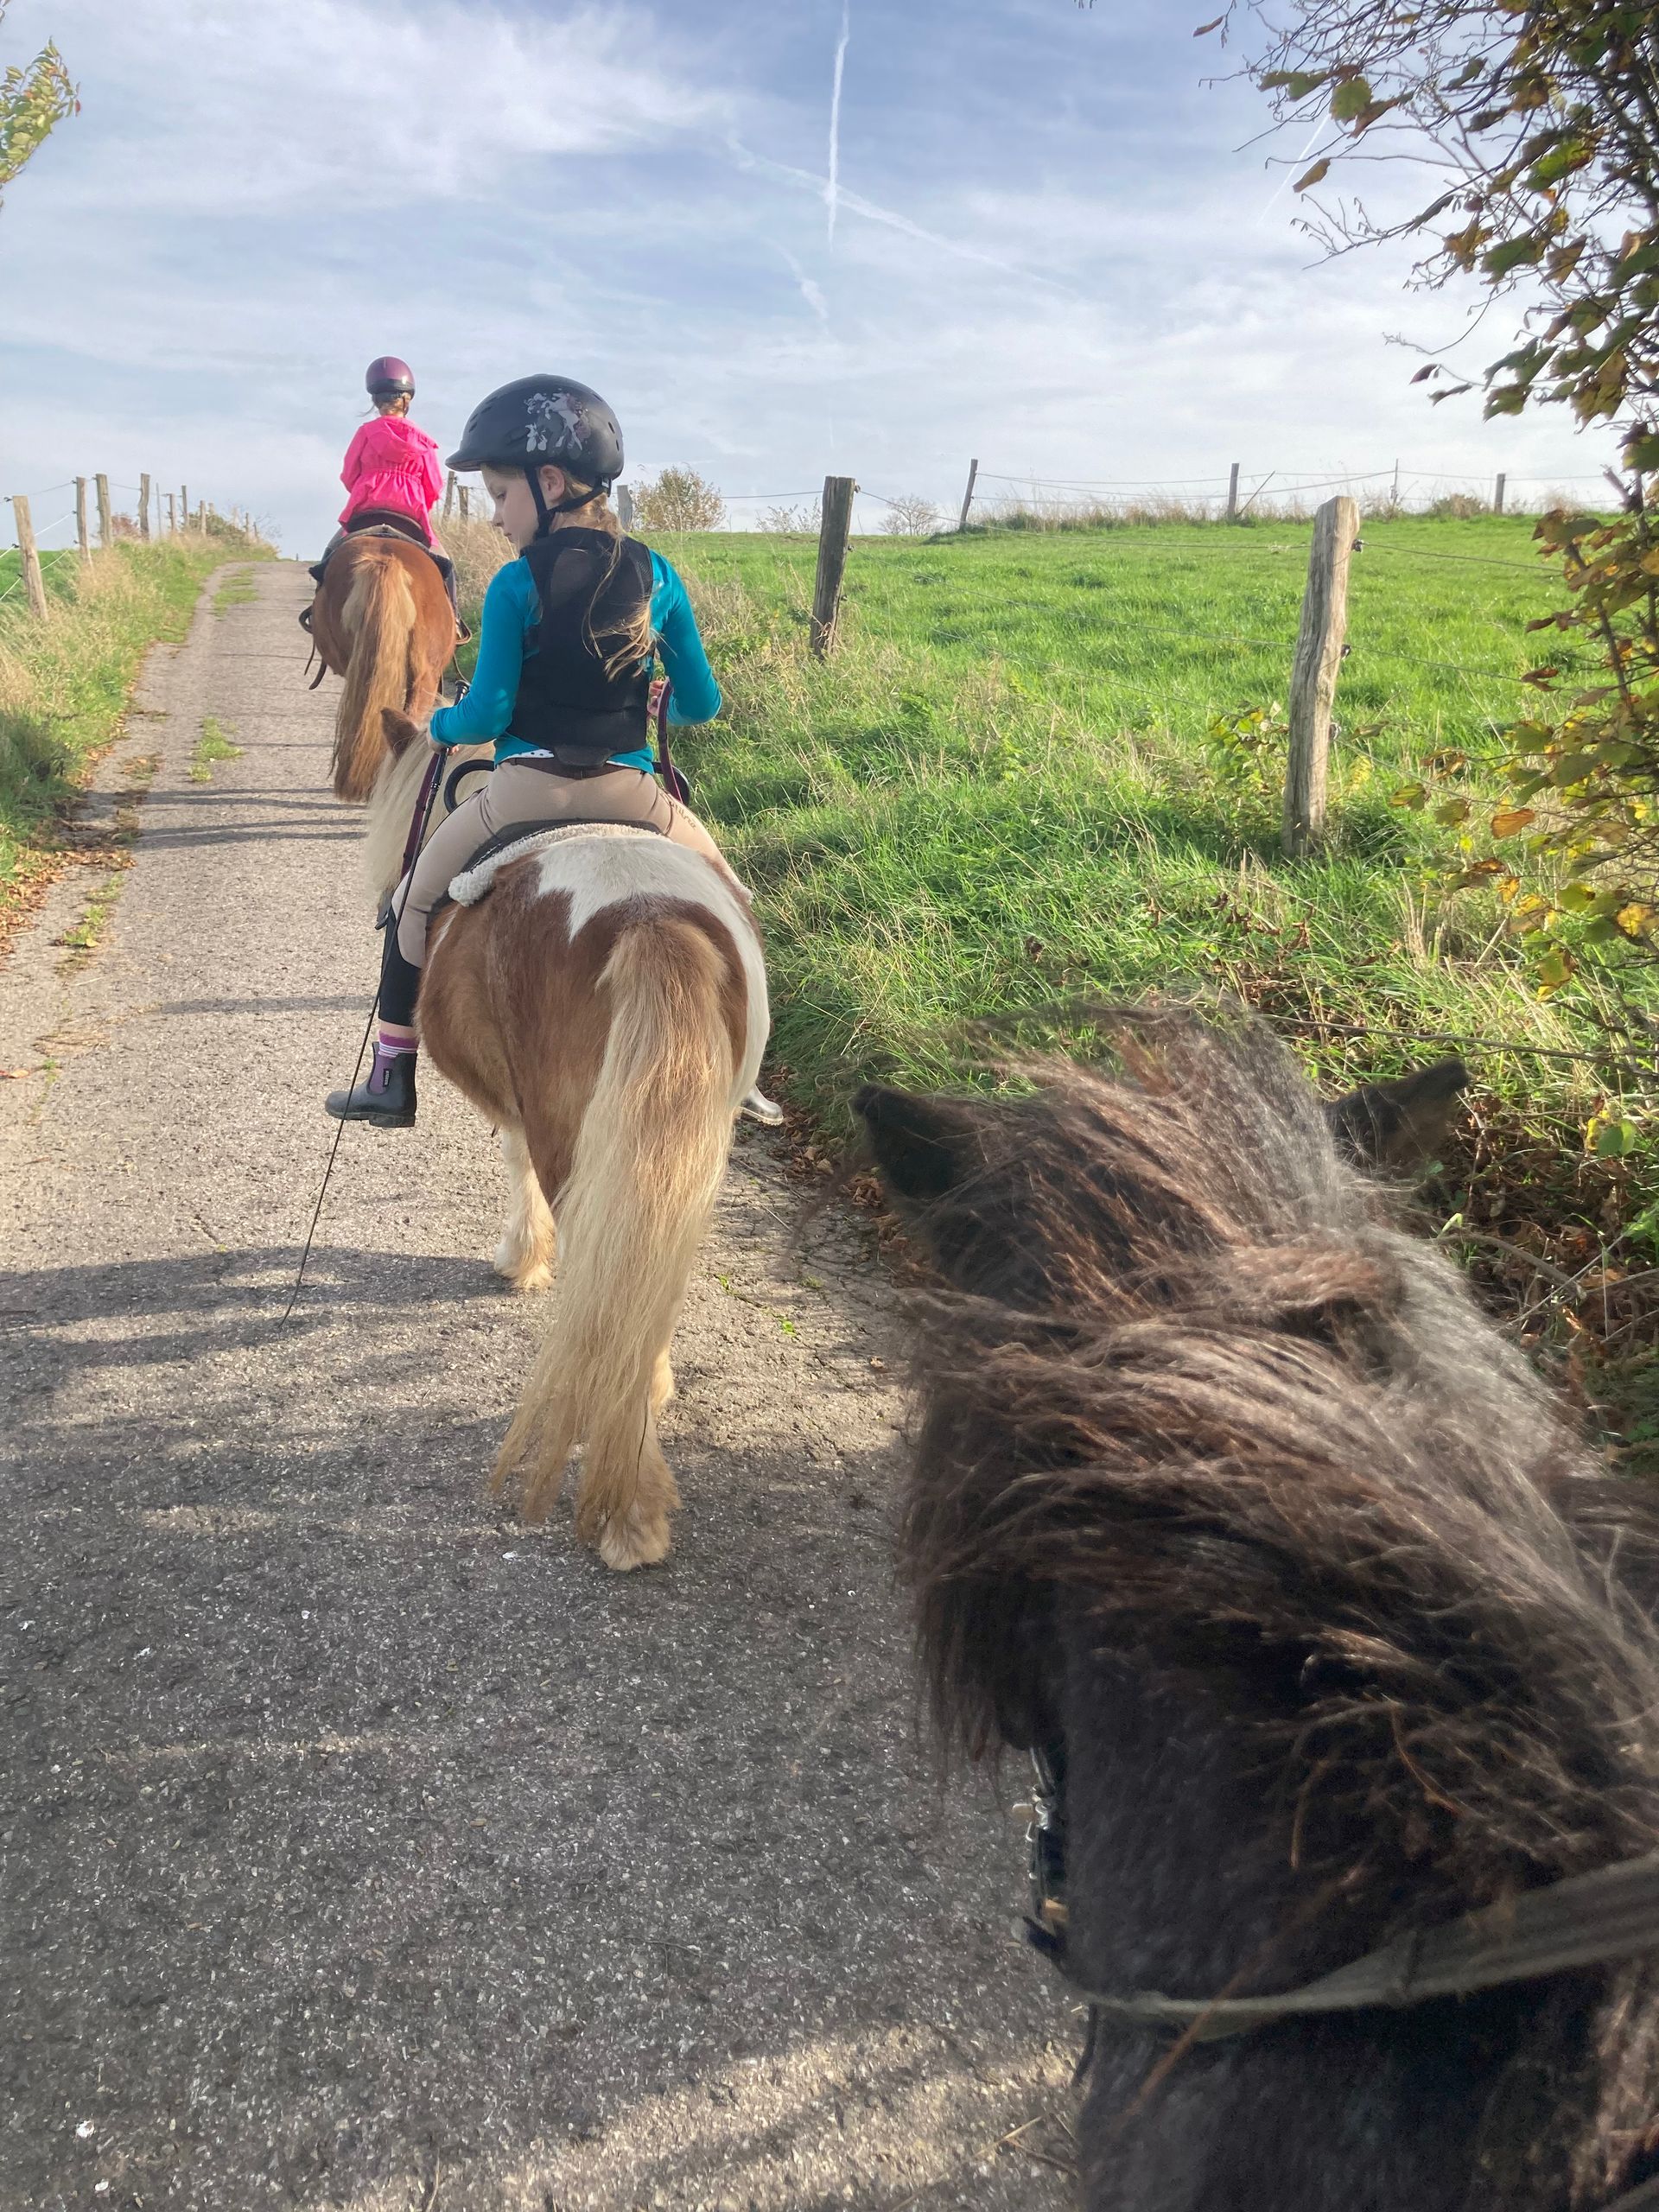 Kinder auf Ponys reiten einen Straße entlang